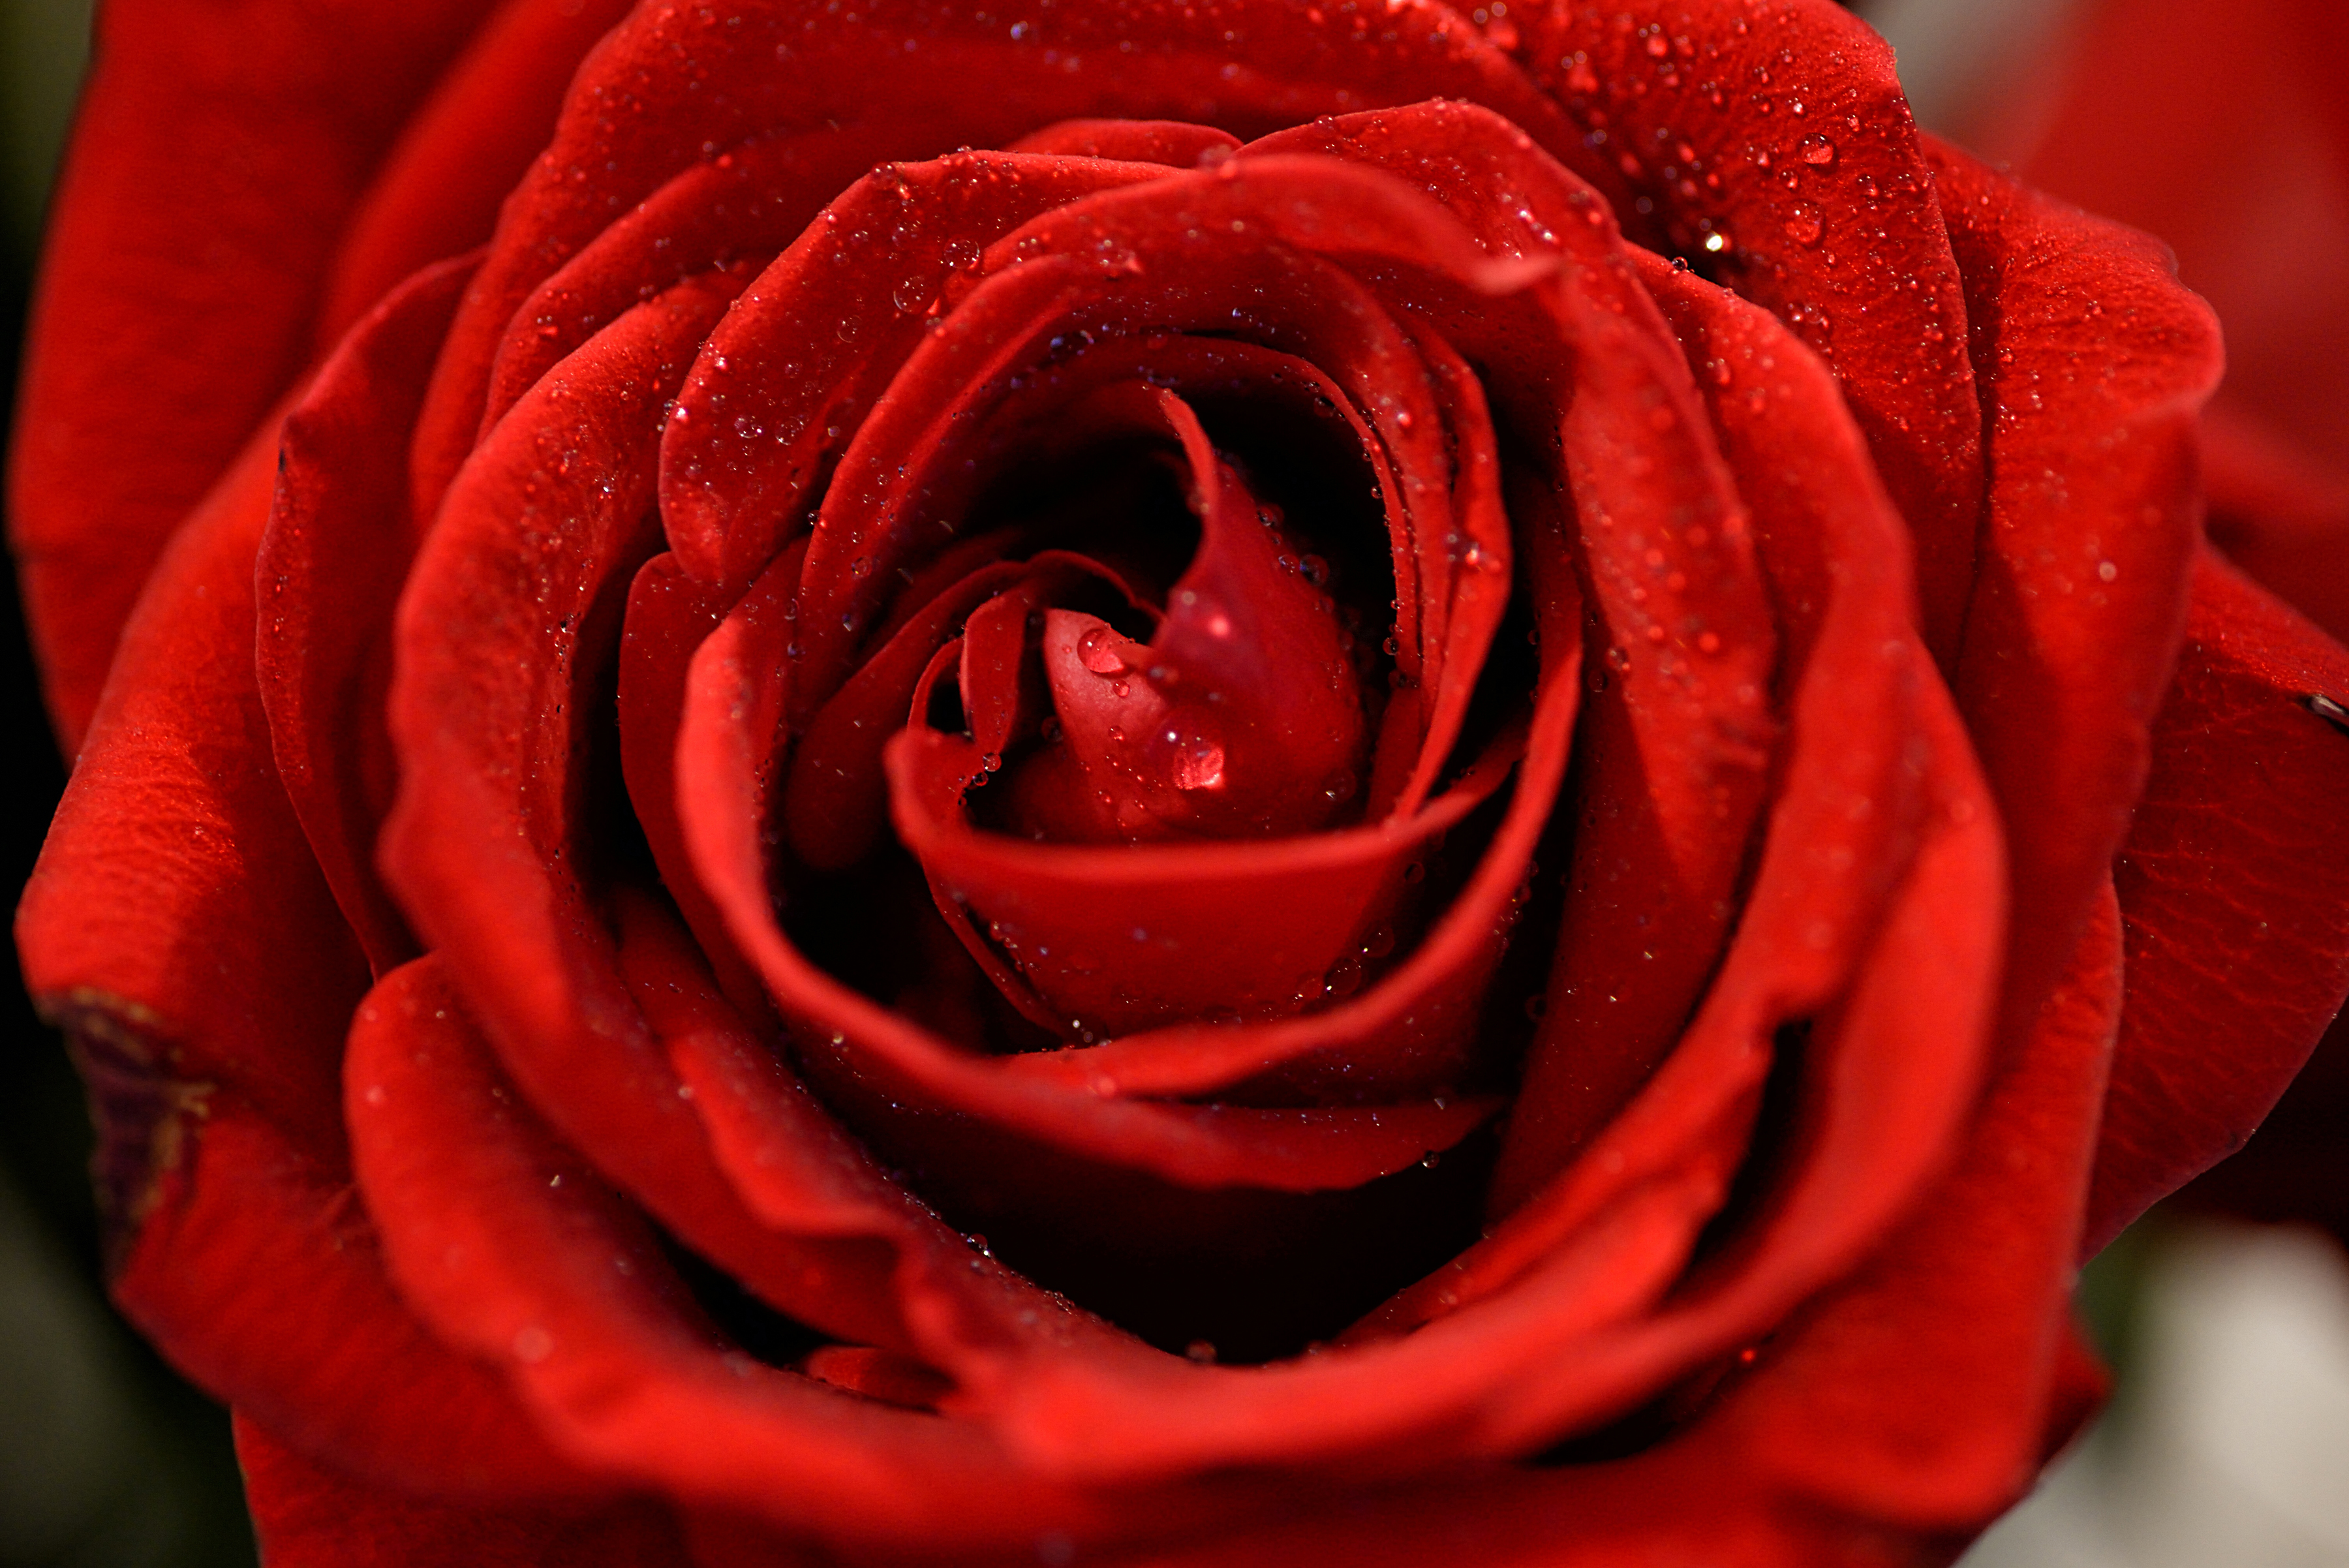 Красивое фото красной розы. Ред ред Роуз. Бутон красной розы. Красивые красные розы. Красный цветочек.